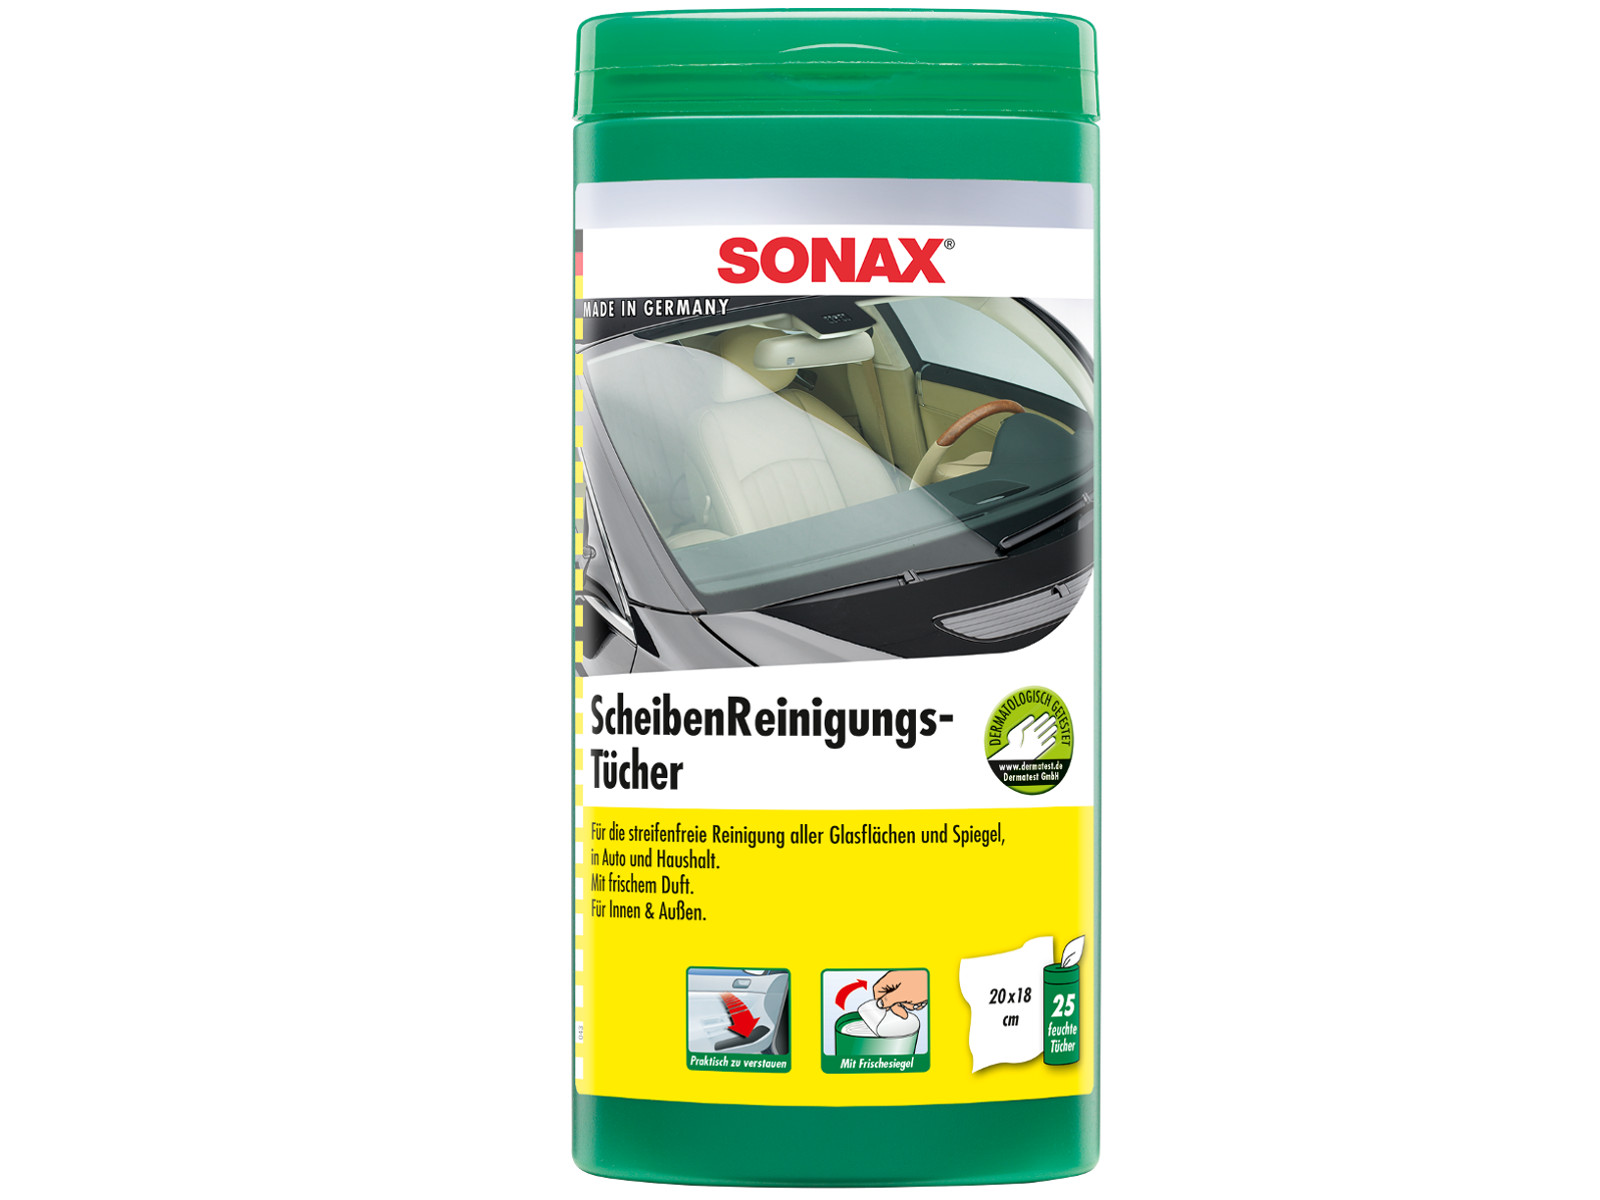 Sonax AntiFrost+KlarSicht Scheibenreiniger gebrauchsfertig bis -20°C ,  15,95 €